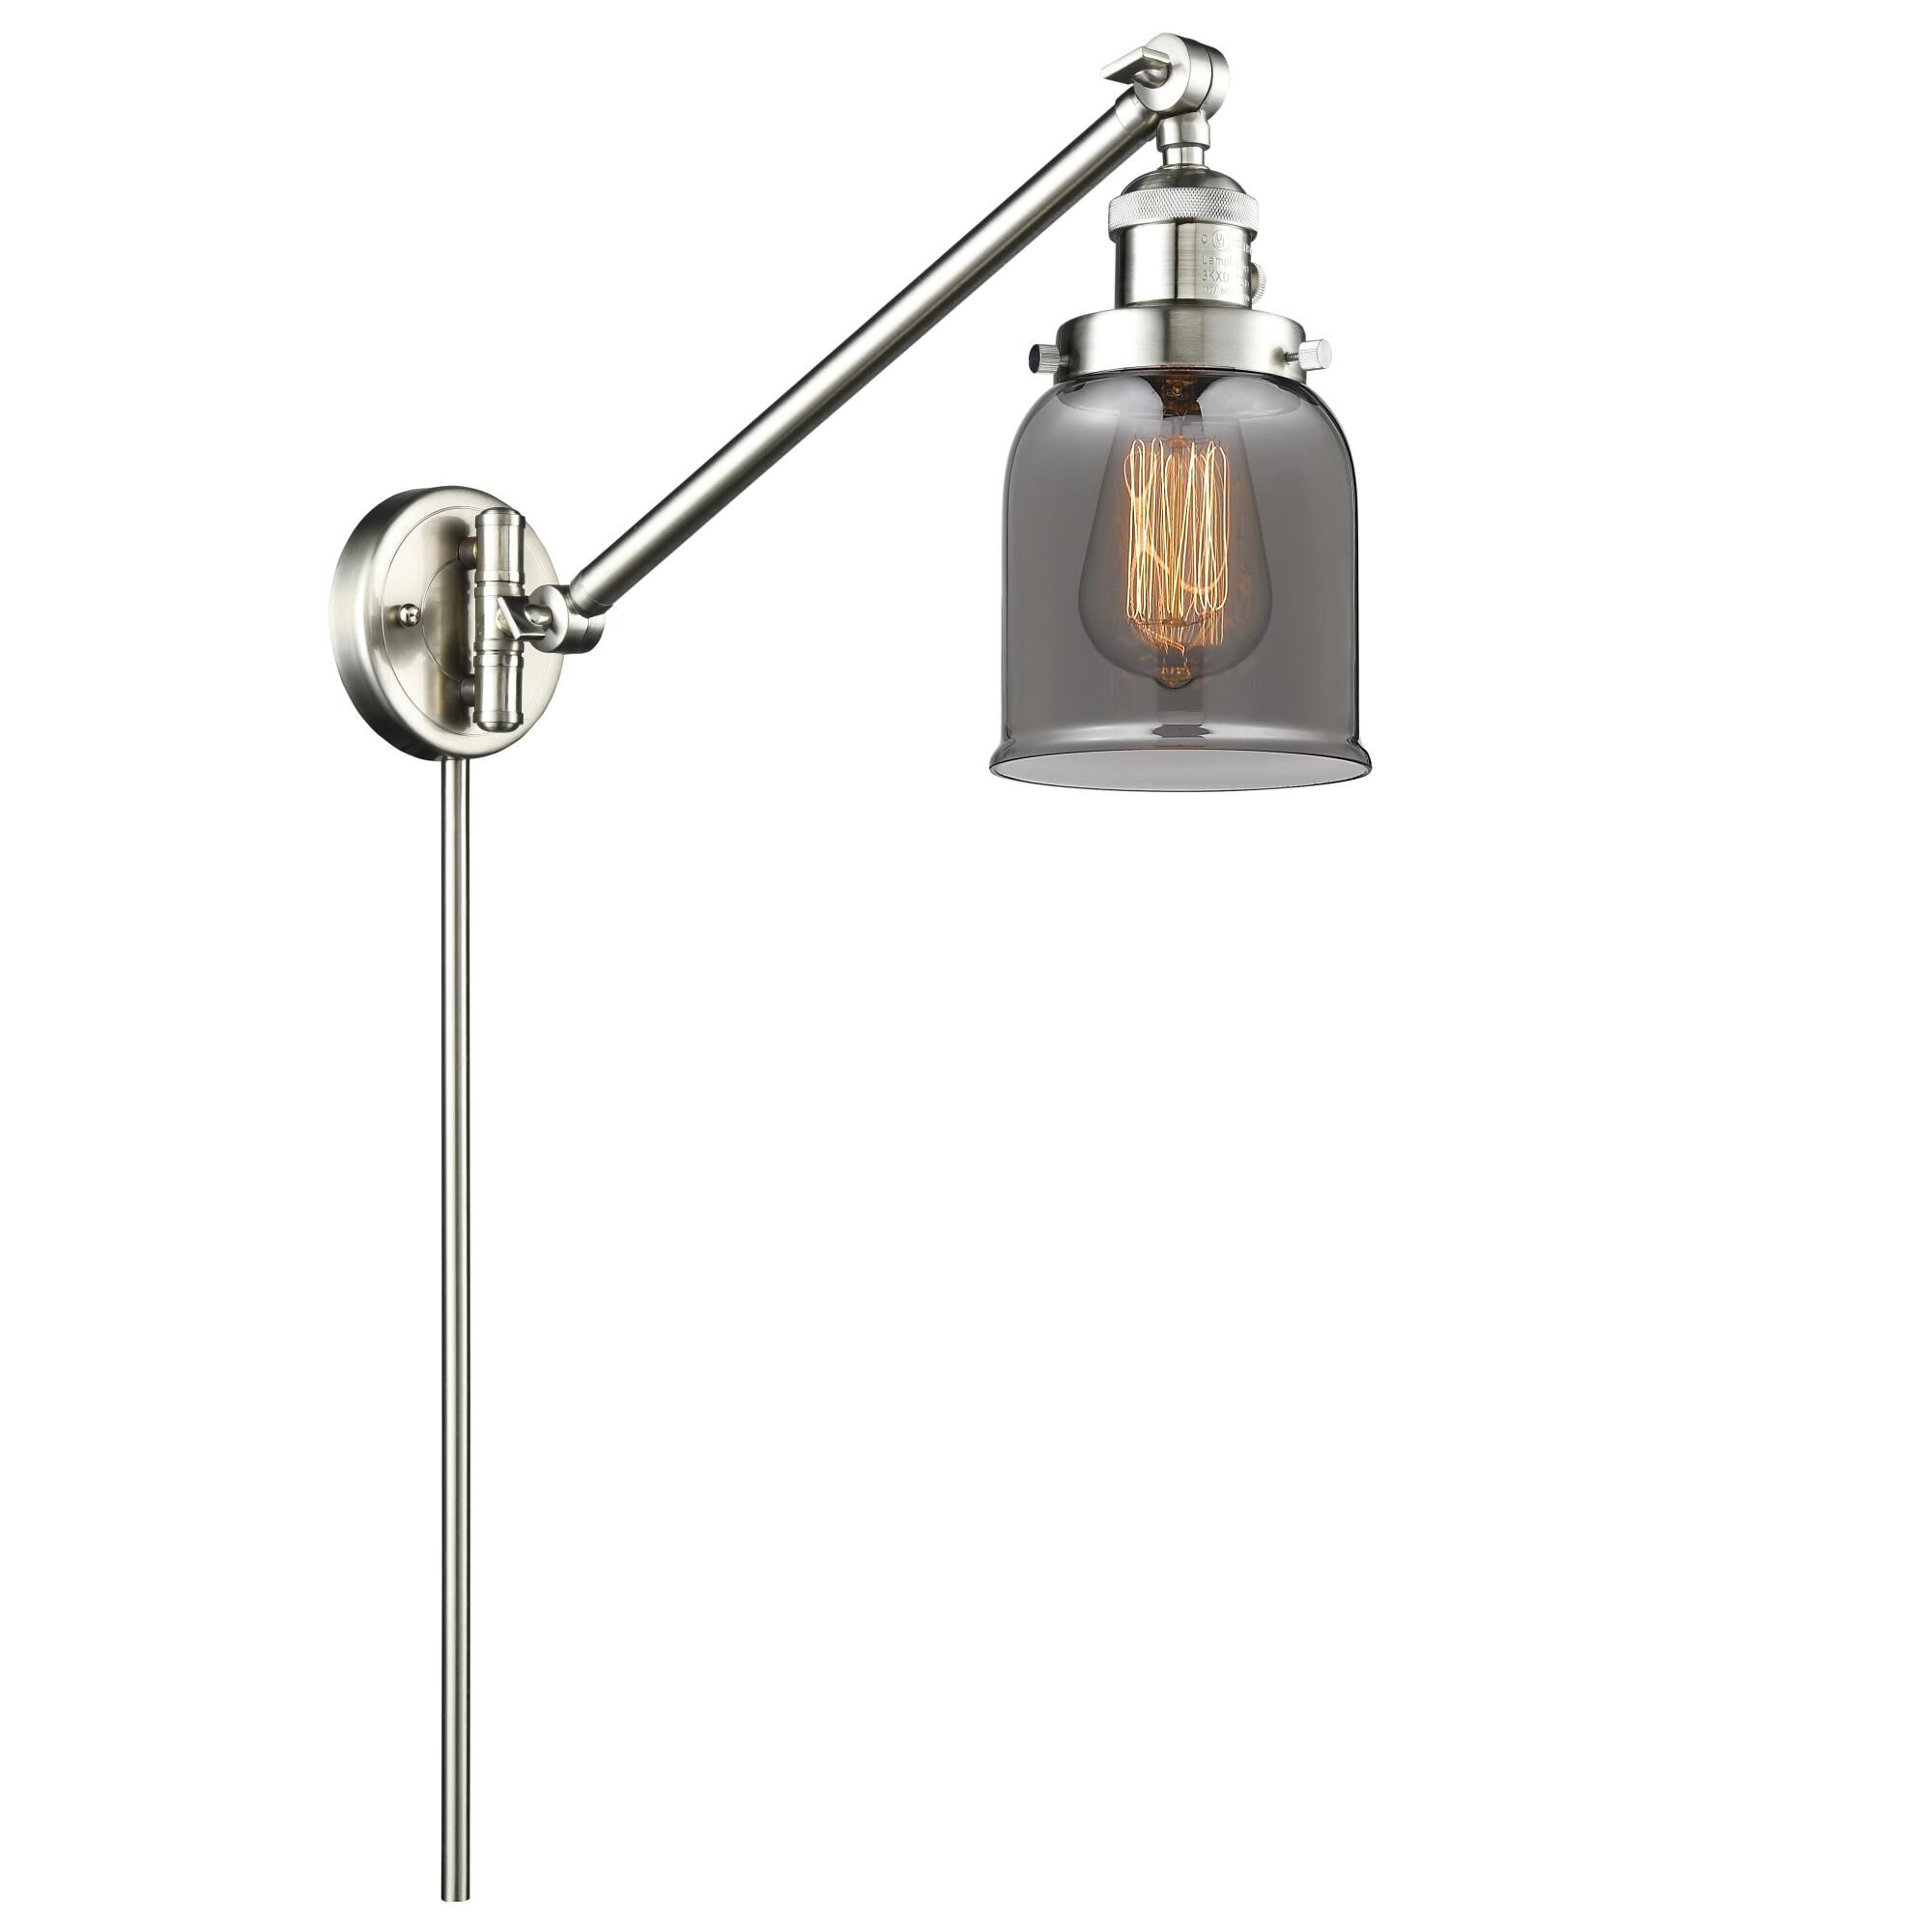 Photos - Floodlight / Garden Lamps Innovations Lighting Bruno Marashlian Small Bell Wall Swing Lamp Small Bel